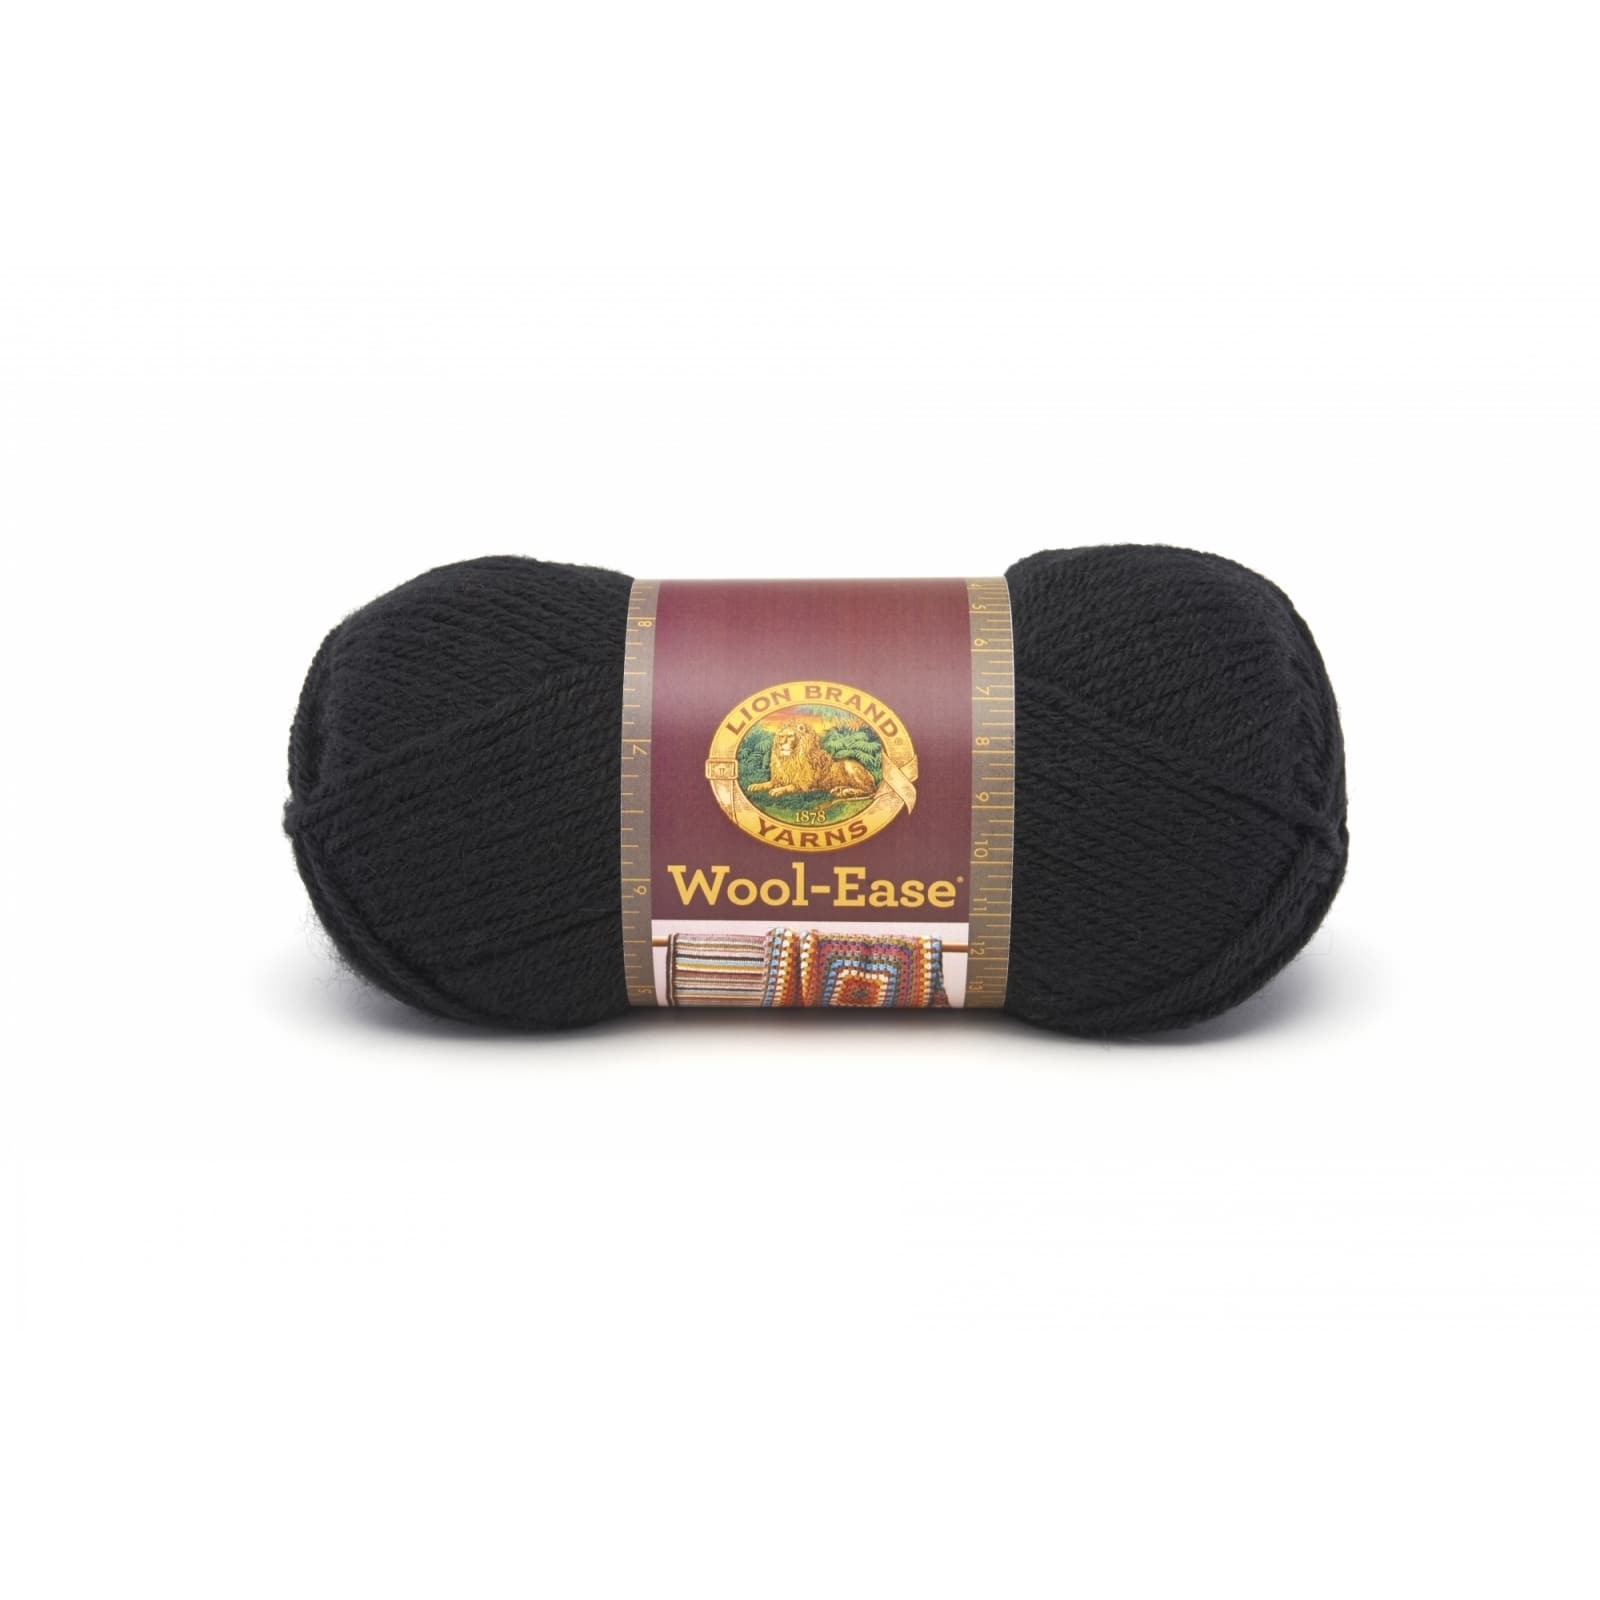 Lion Brand Yarn (1 Skein) Wool-Ease Yarn, Oxford Grey